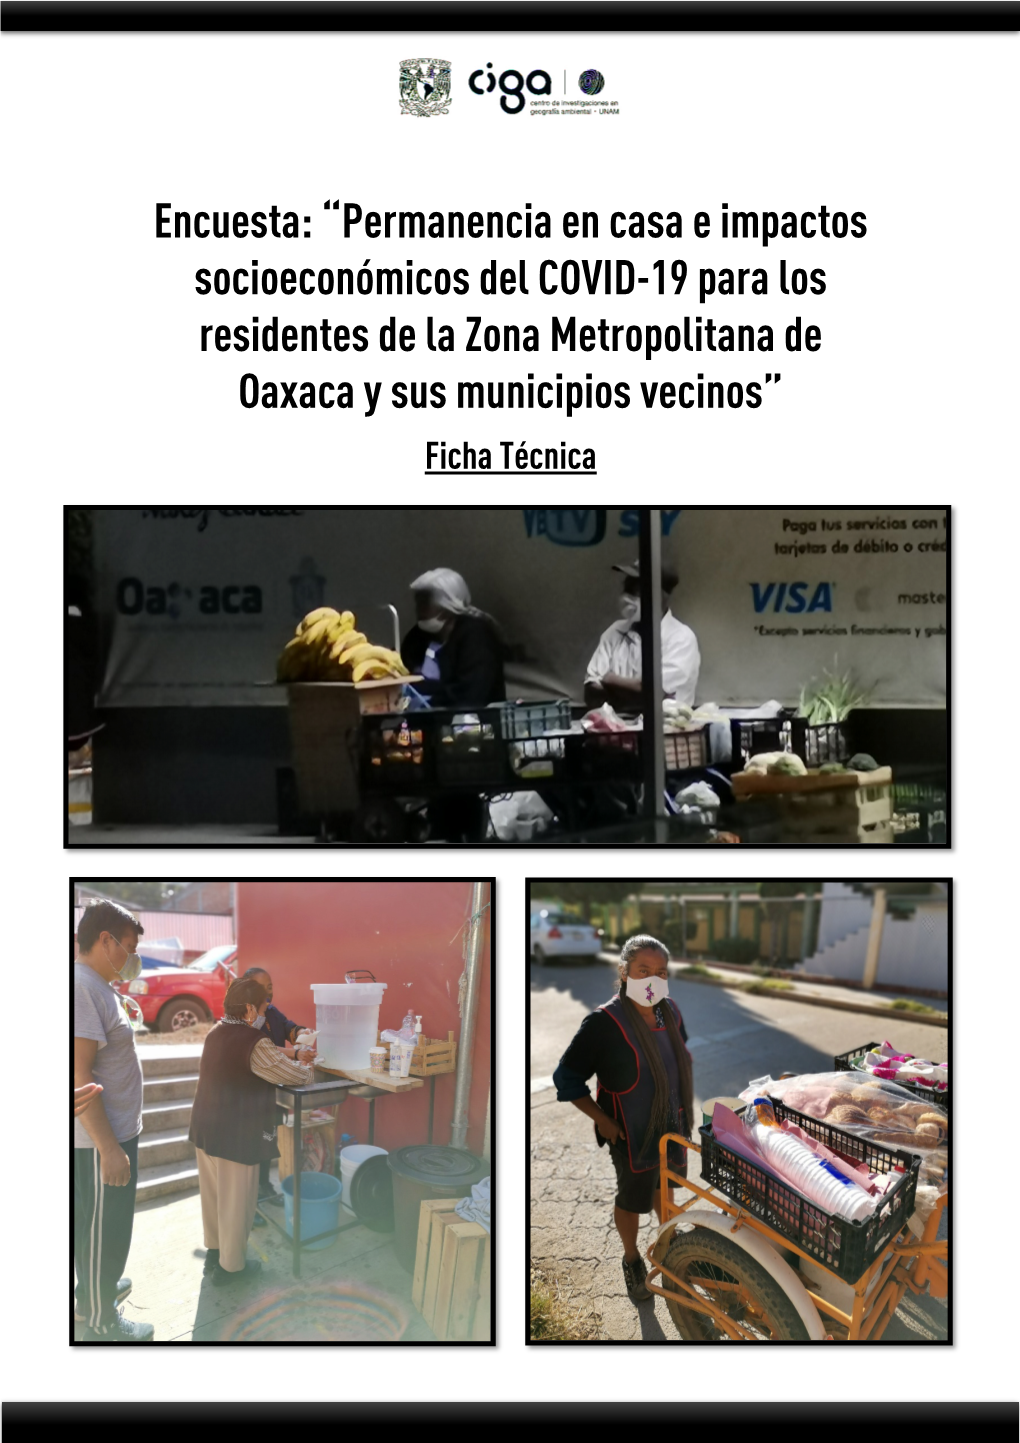 Permanencia En Casa E Impactos Socioeconómicos Del COVID-19 Para Los Residentes De La Zona Metropolitana De Oaxaca Y Sus Municipios Vecinos” Ficha Técnica